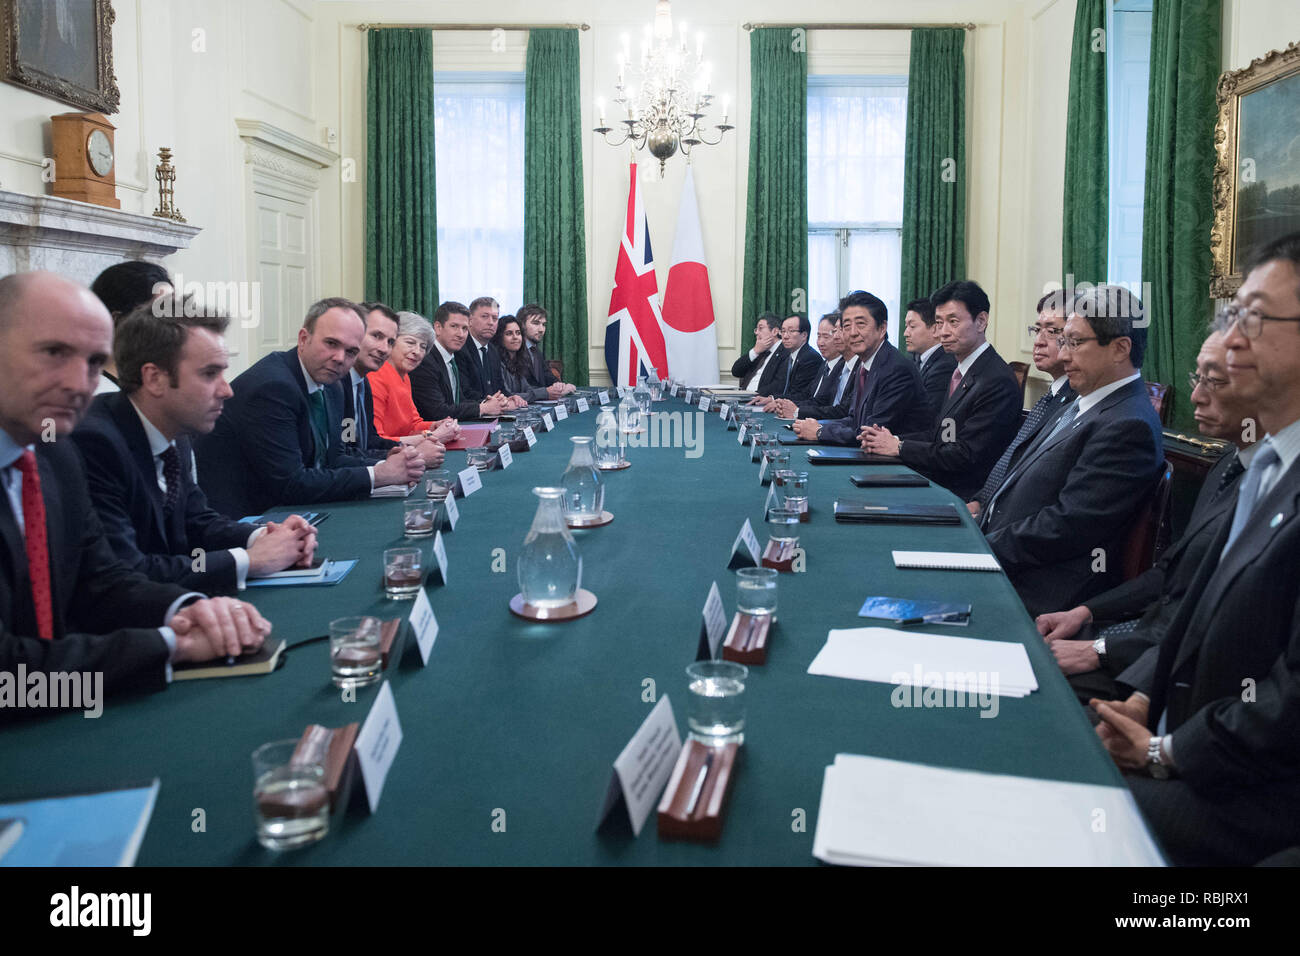 Premier ministre Theresa mai avec le Premier ministre japonais Shinzo Abe au 10 Downing Street, Londres la veille d'une réunion bilatérale. Banque D'Images